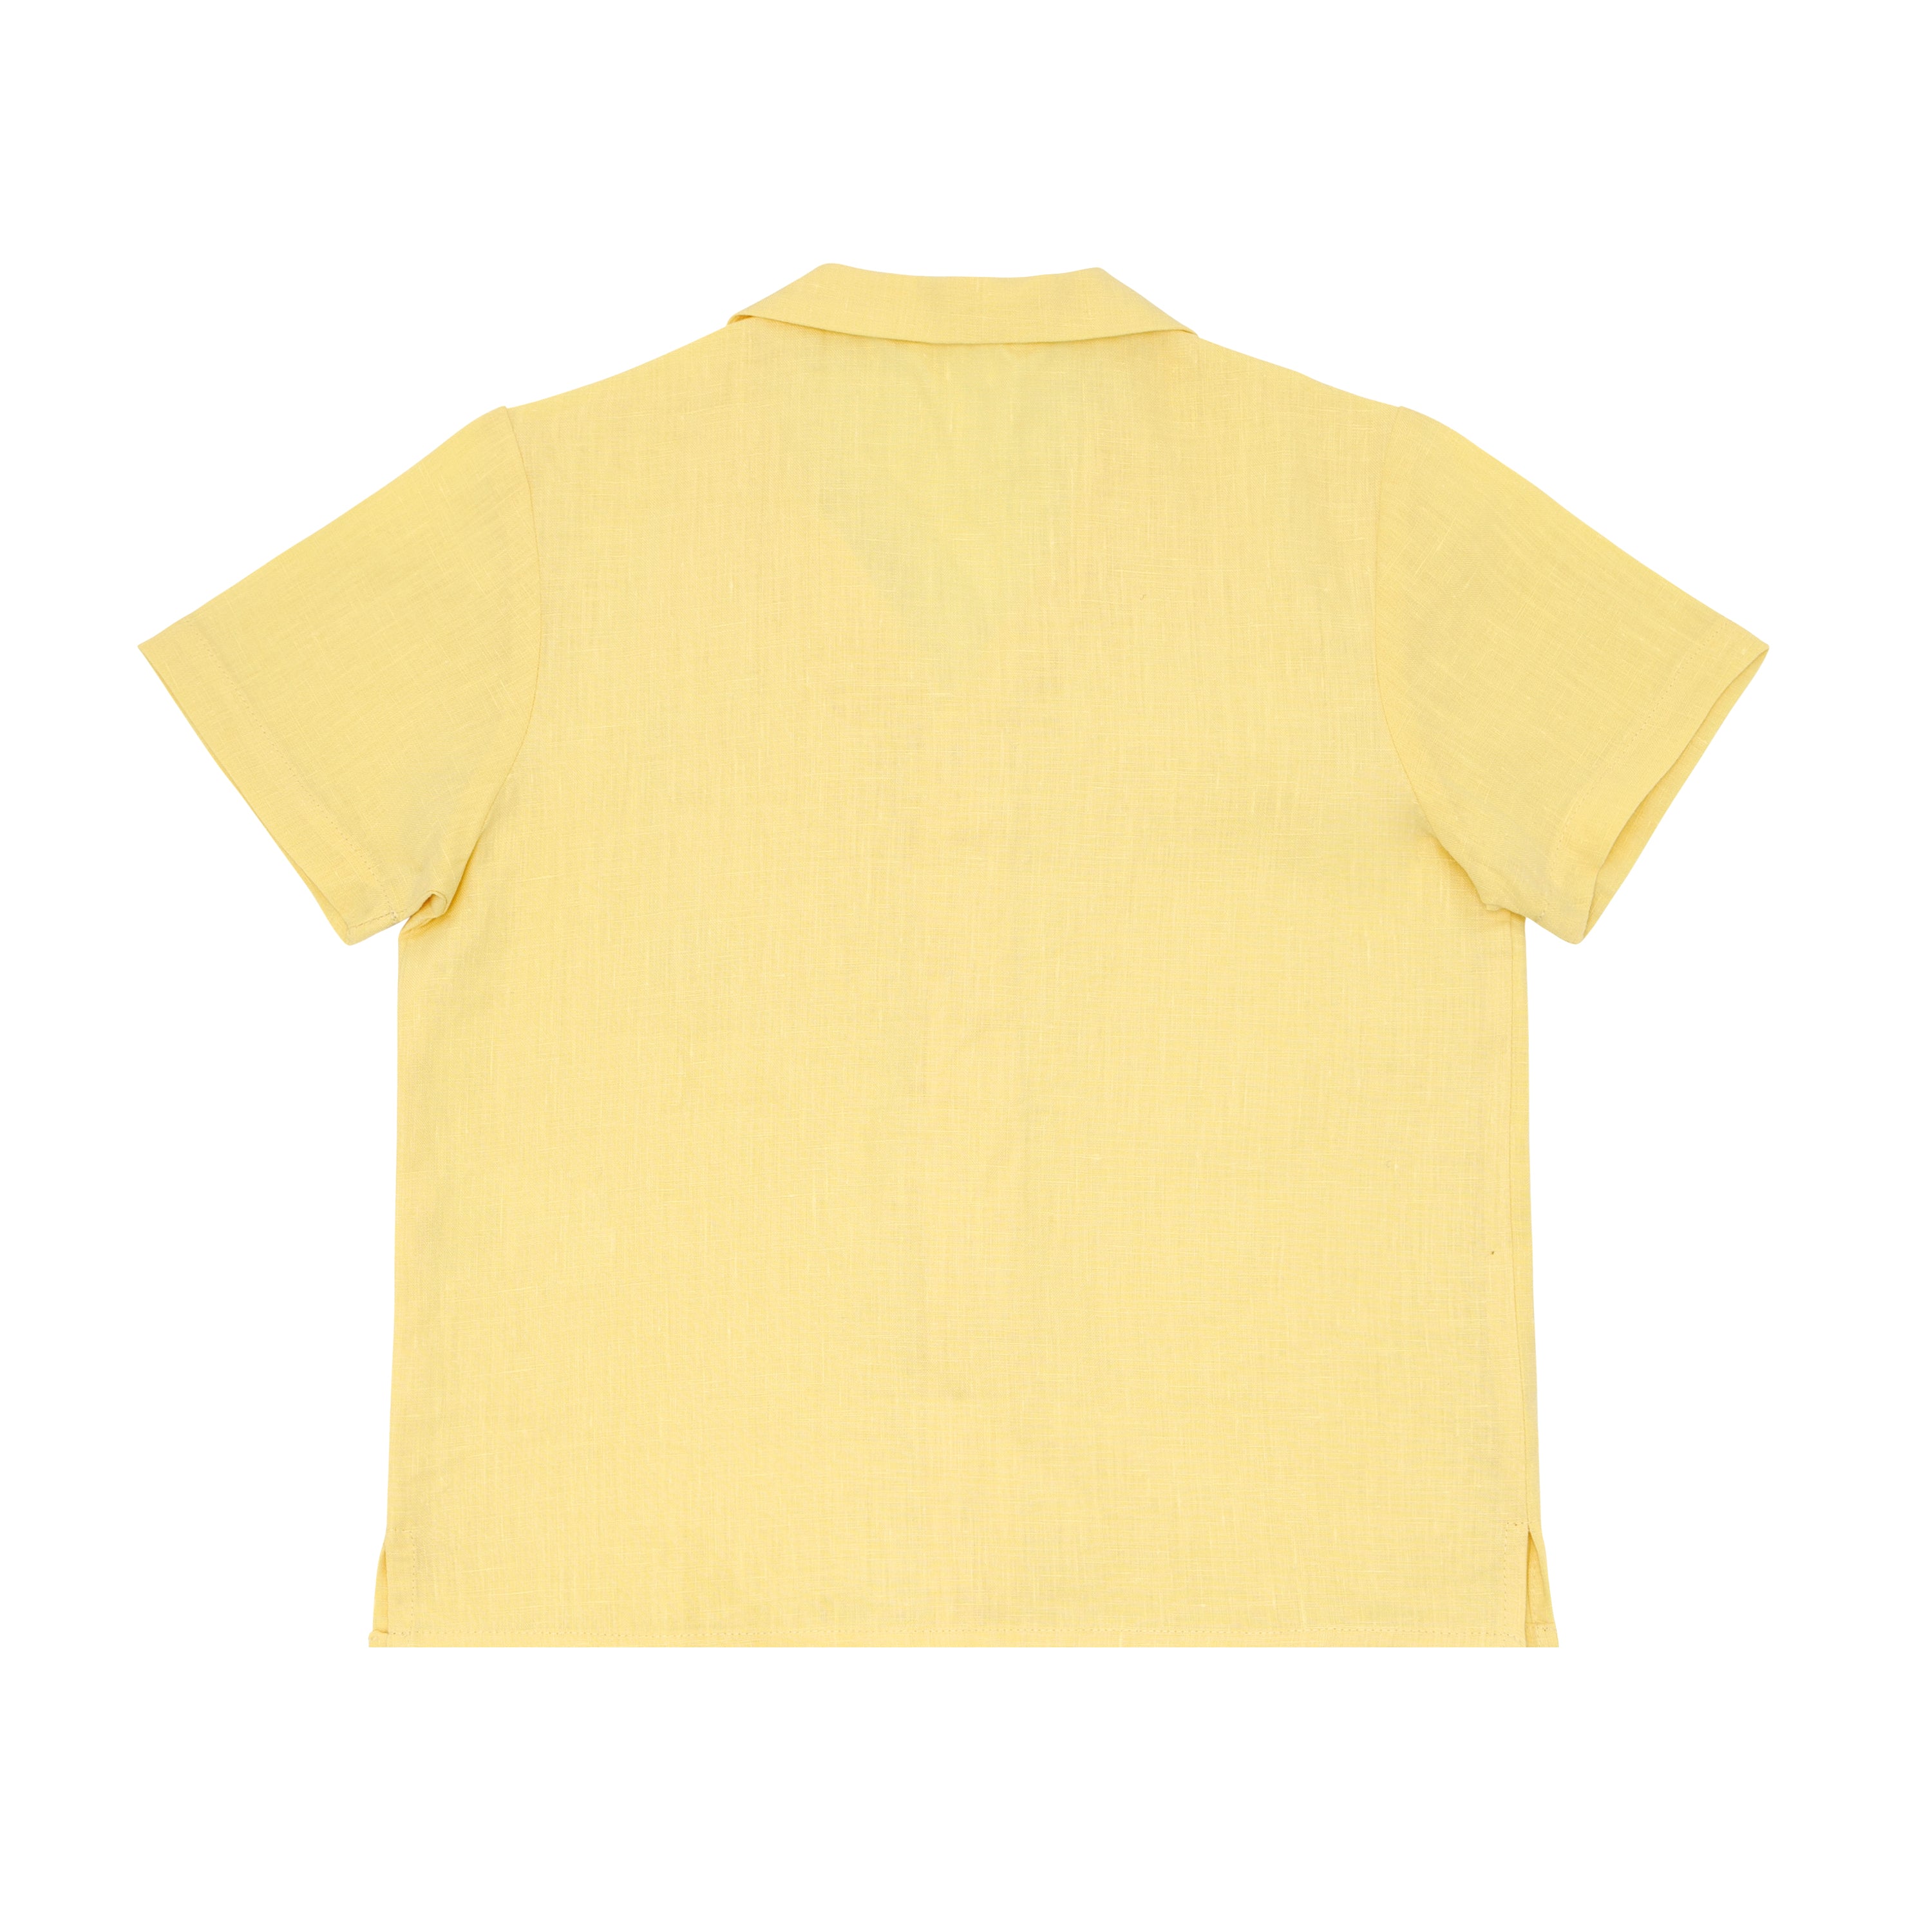 Fanm Mon x Minnow Boy&#39;s Linen Shirt